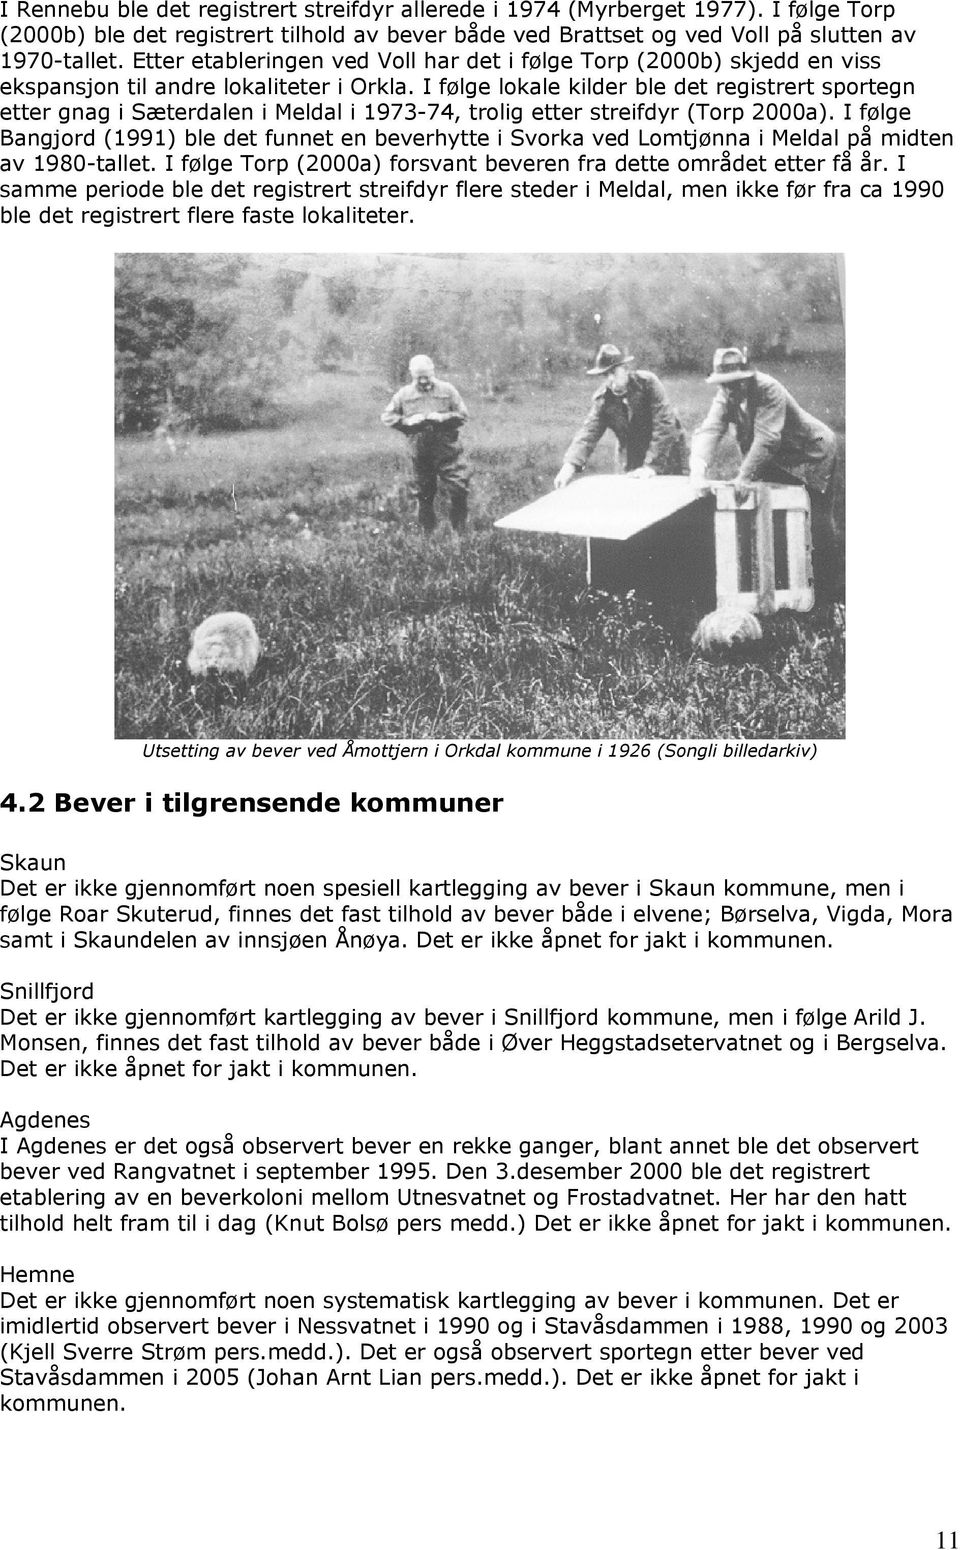 I følge lokale kilder ble det registrert sportegn etter gnag i Sæterdalen i Meldal i 1973-74, trolig etter streifdyr (Torp 2000a).